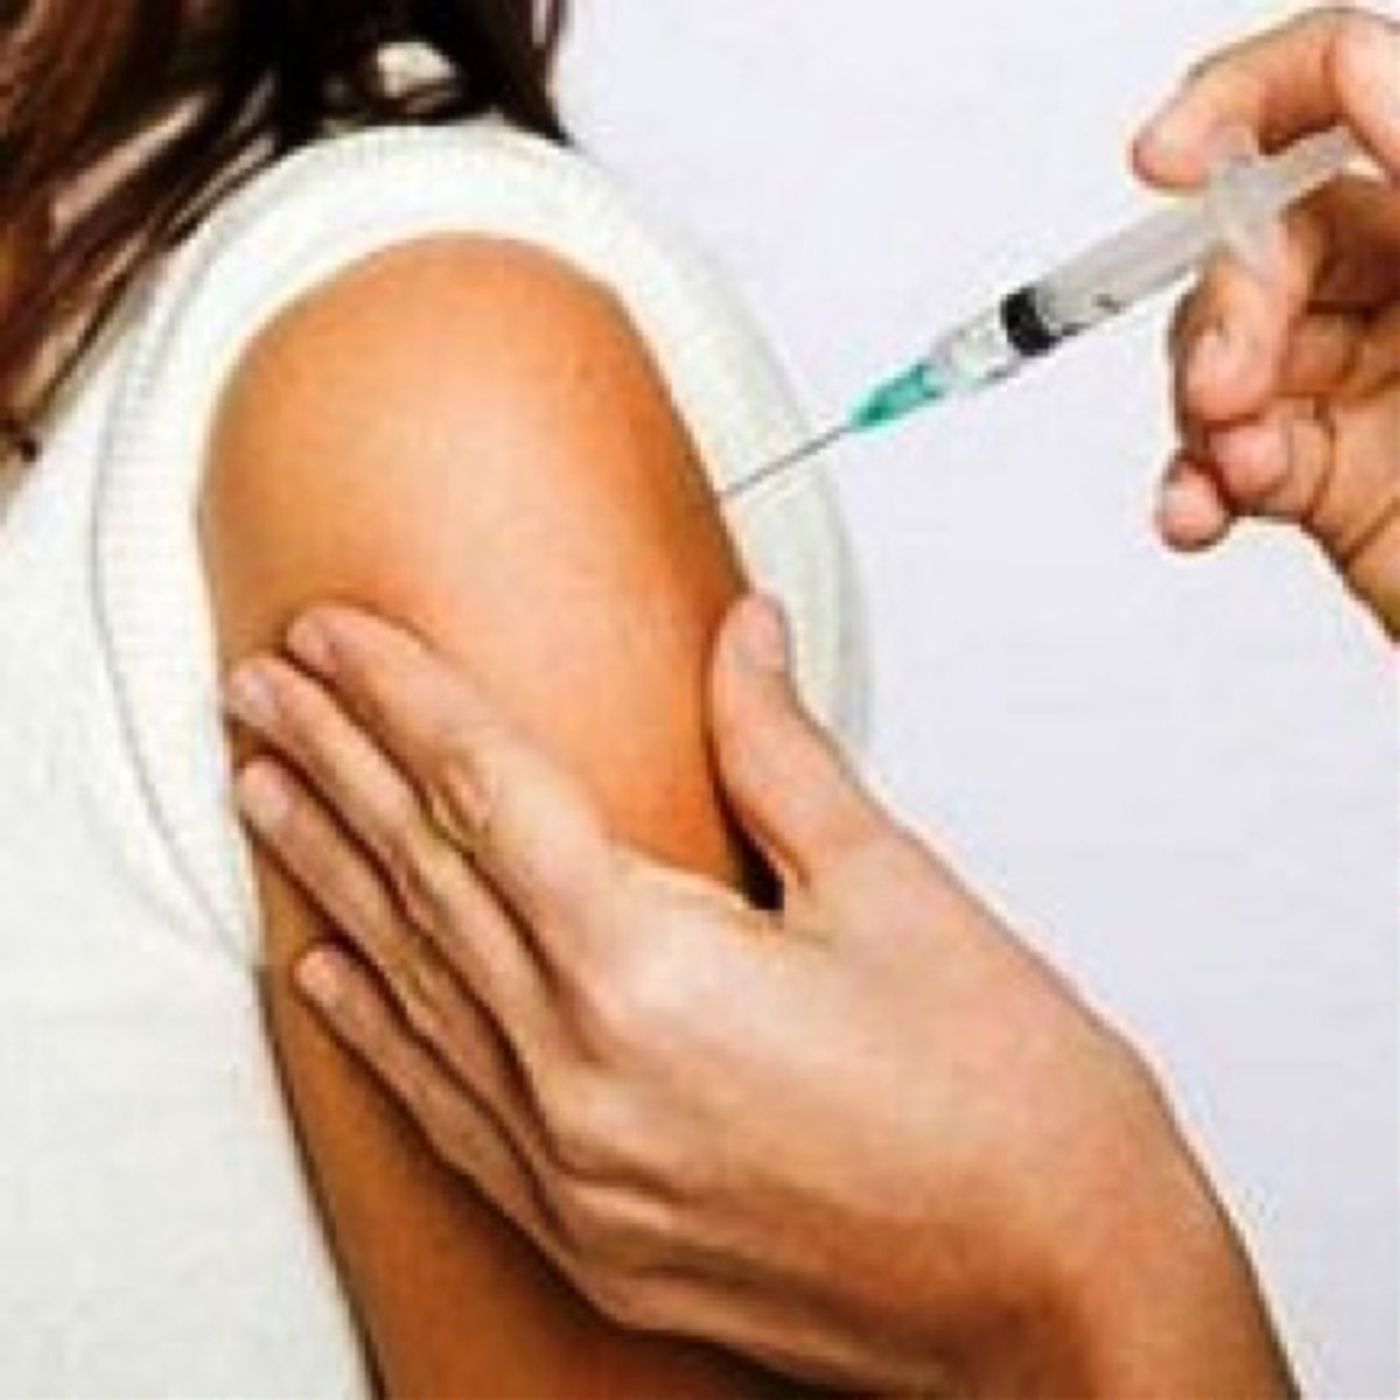 Schiavi del vaccino... che non fa tornare alla situazione precedente